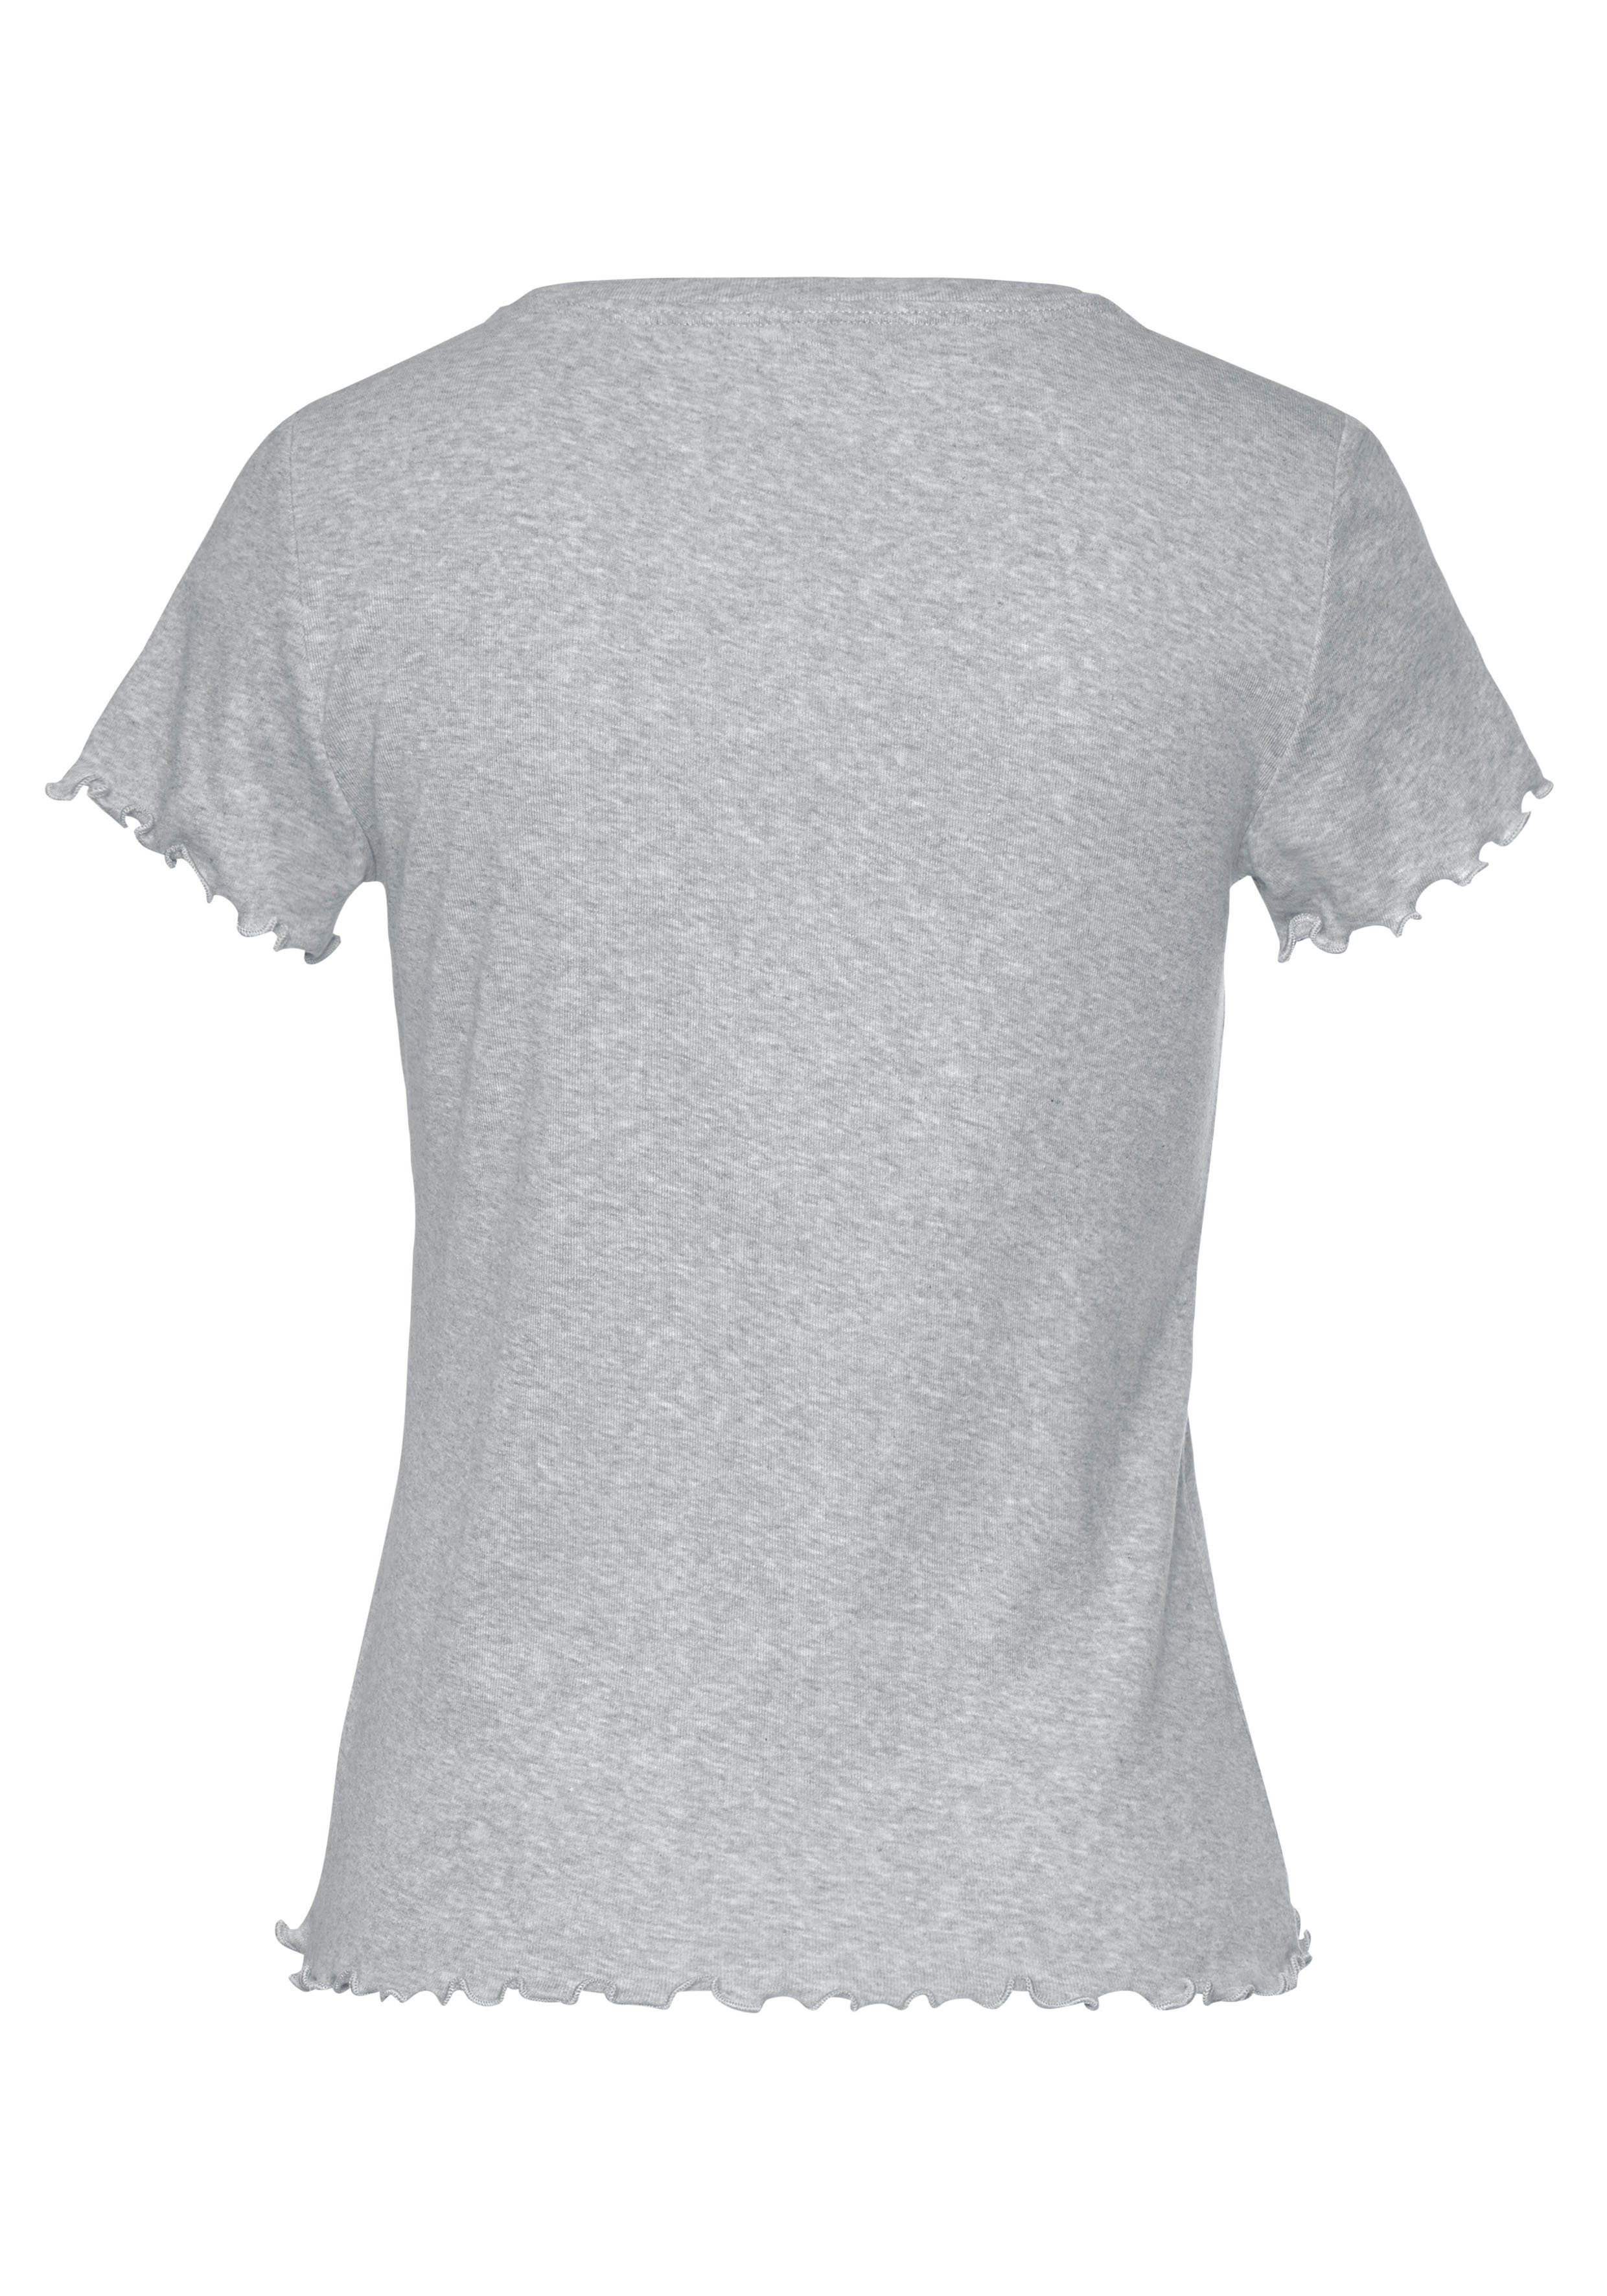 Kräuselsaum s.Oliver mit grau T-Shirt